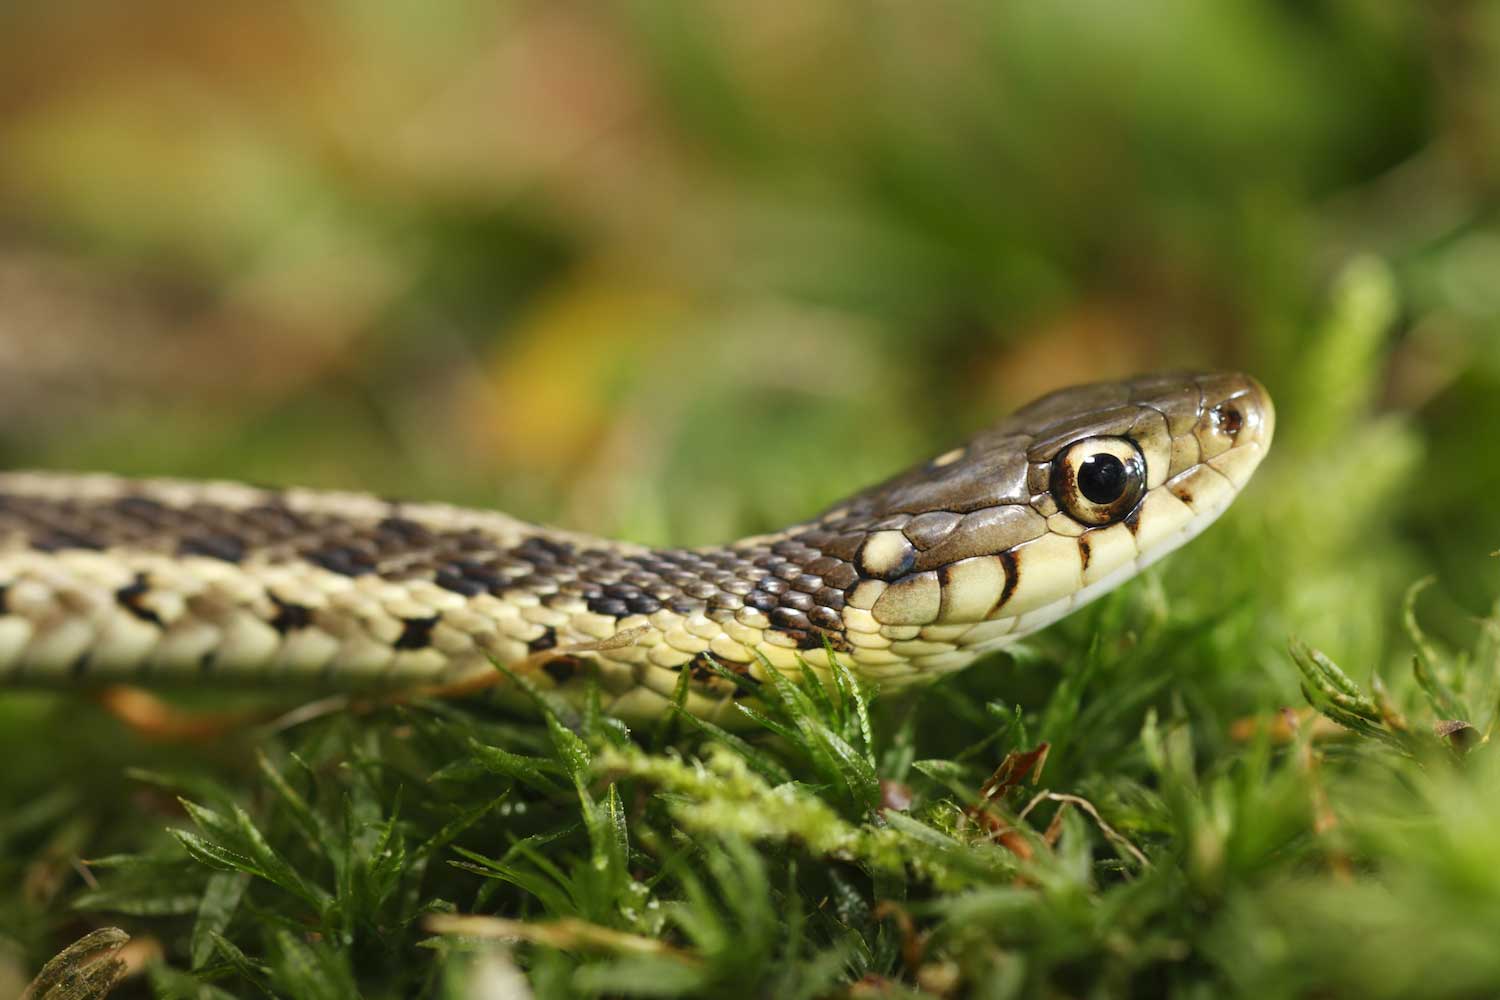 A close-up of a garter snake in grass.